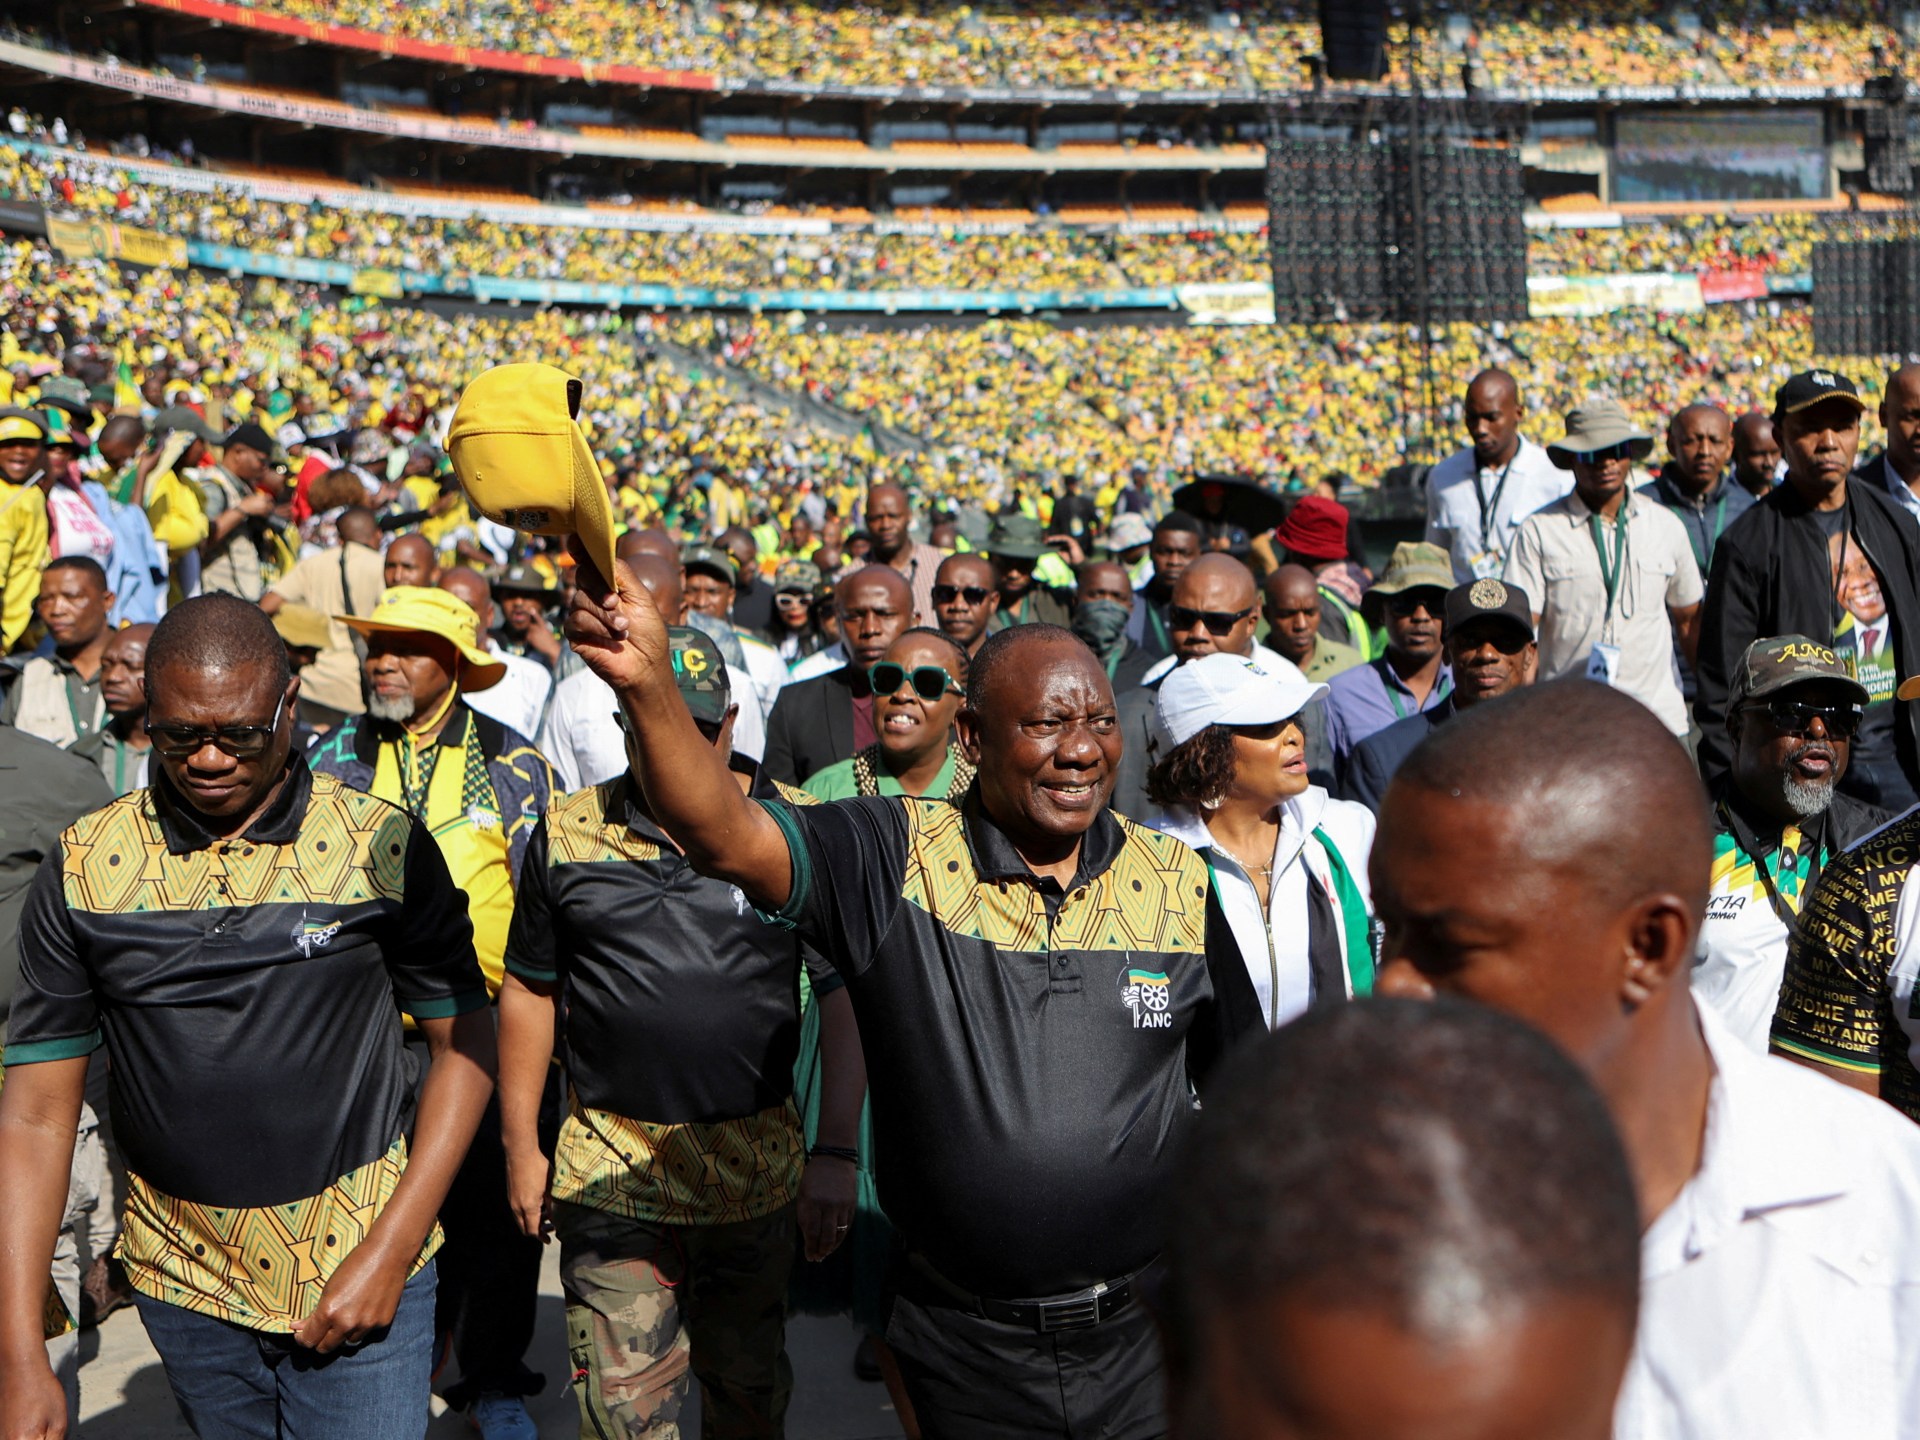 عشرات الآلاف يهتفون في مسيرة حزب المؤتمر الوطني الأفريقي قبل انتخابات جنوب أفريقيا |  أخبار الانتخابات